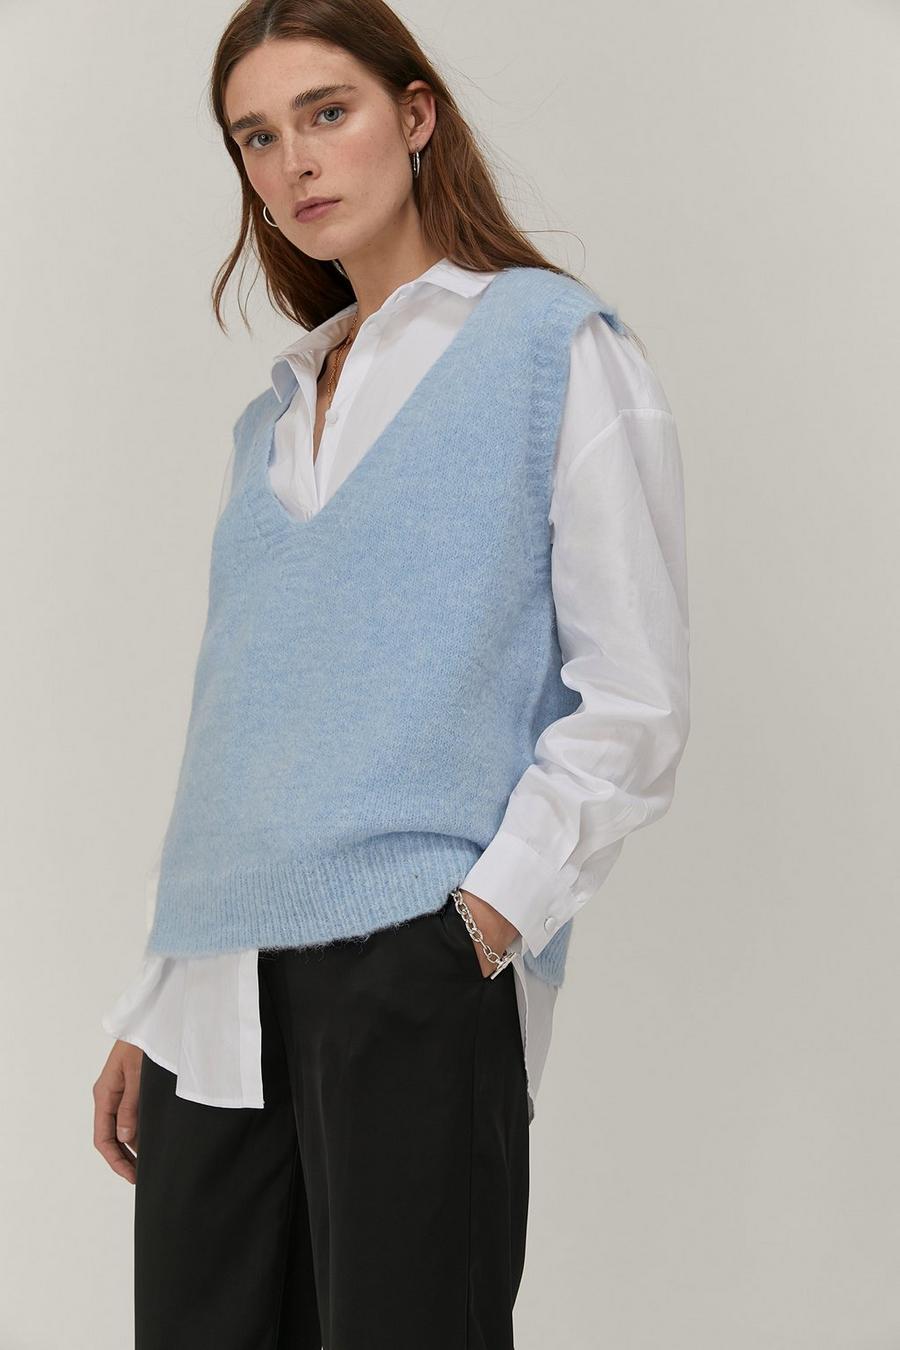 Soft Knit V Neck Sleeveless Tank Sweater Vest